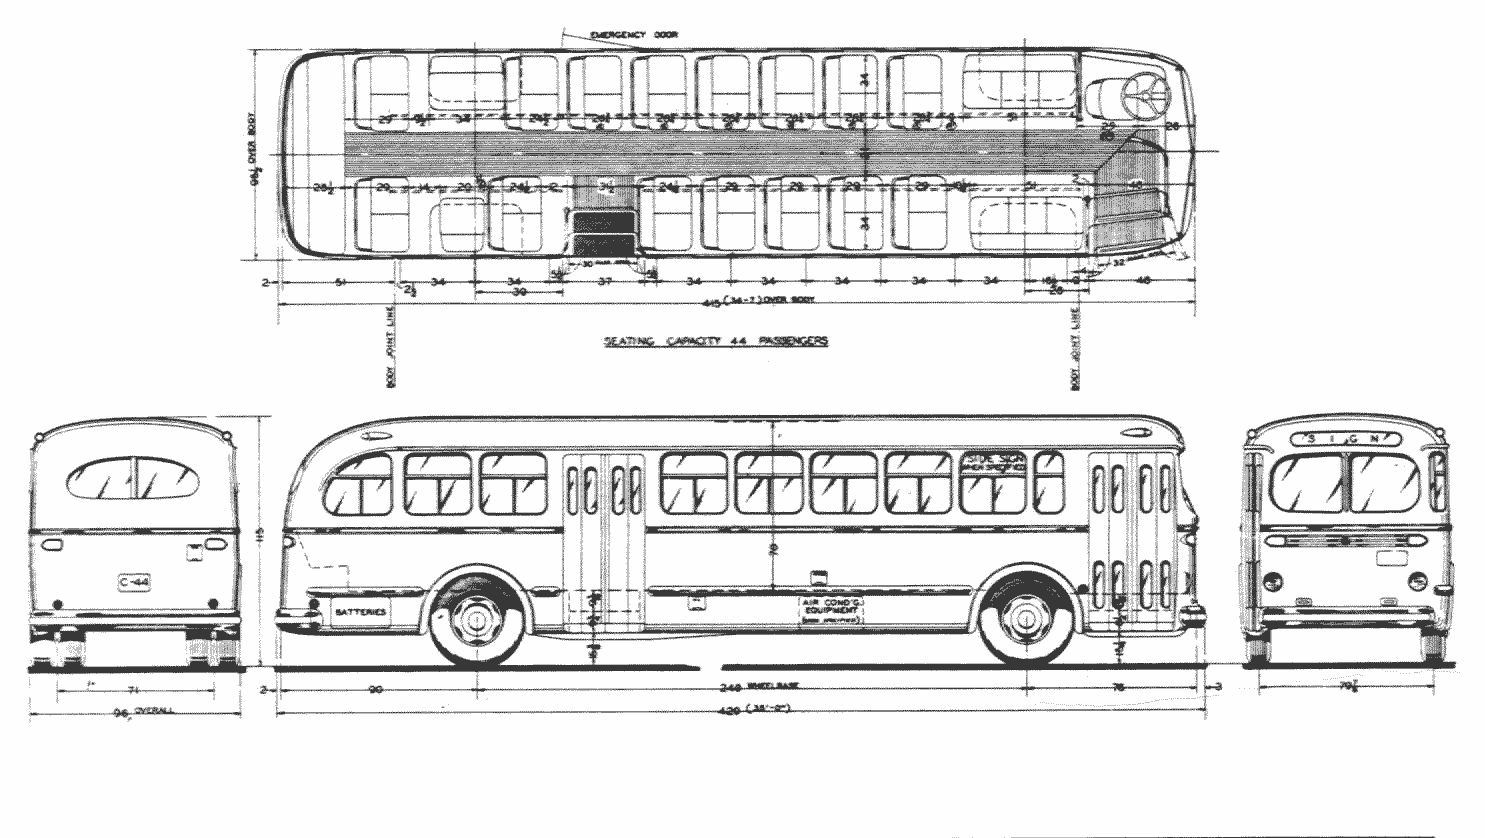 Acf Brill Model C-44 blueprint